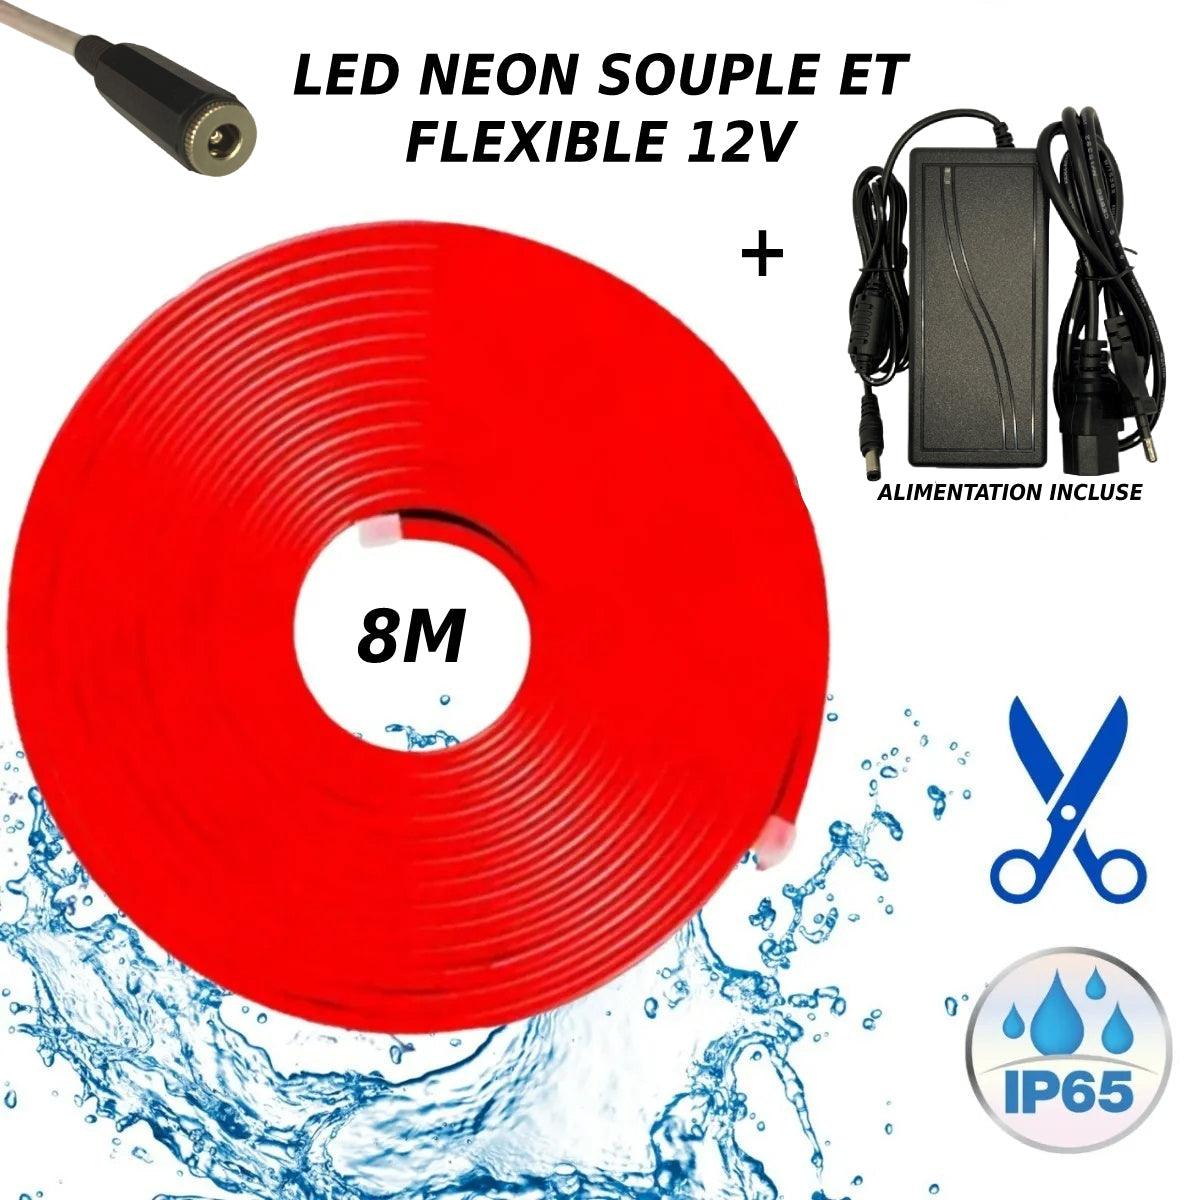 Flexibler Neon-LED-Streifen 12V Rot 8M